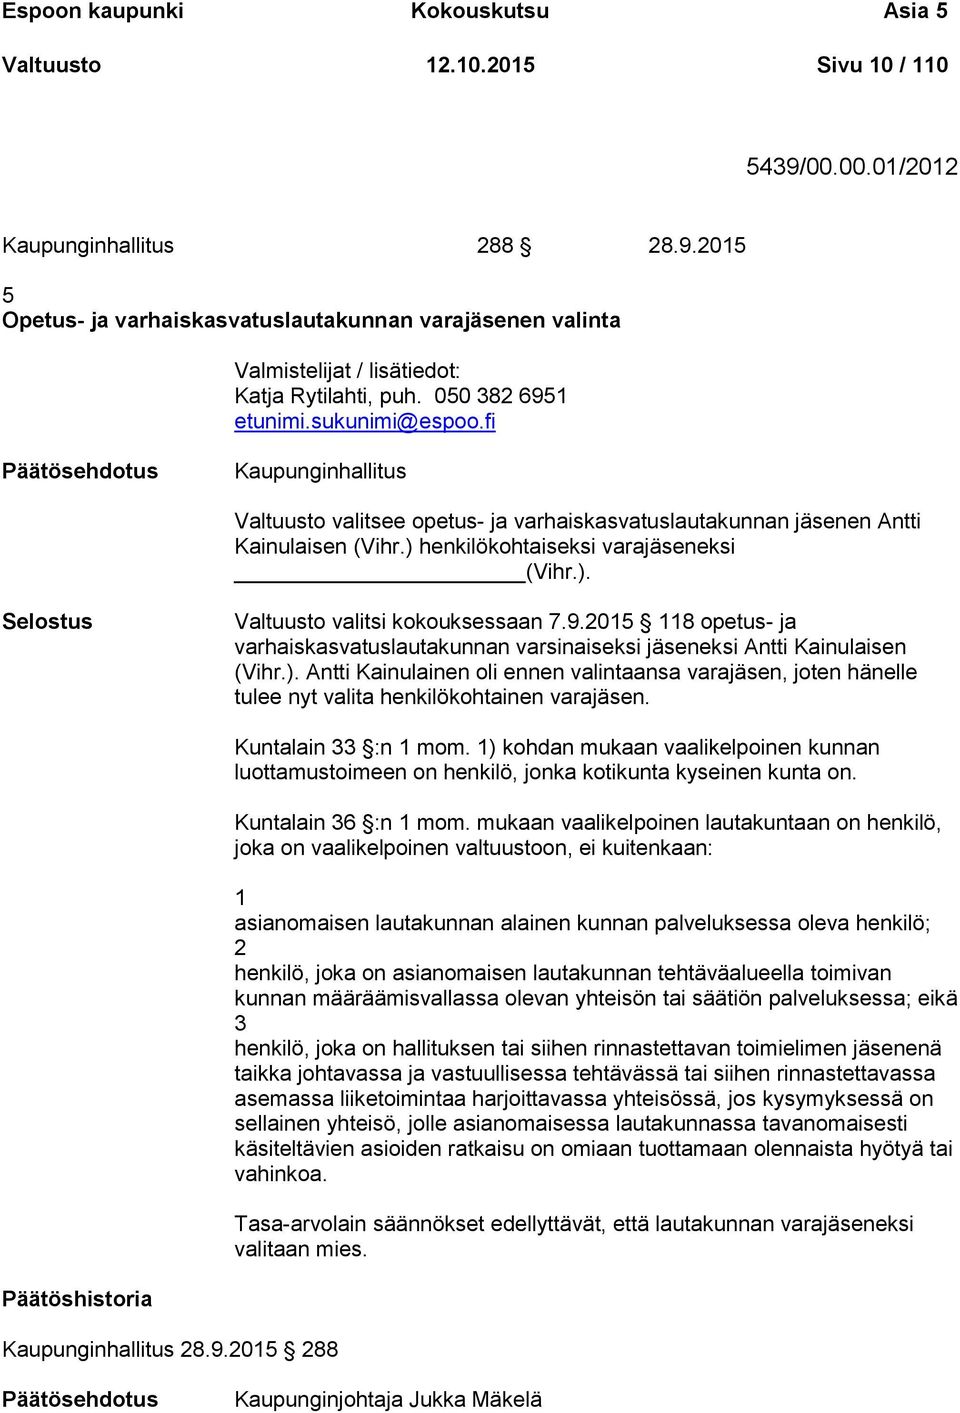 9.2015 118 opetus- ja varhaiskasvatuslautakunnan varsinaiseksi jäseneksi Antti Kainulaisen (Vihr.).